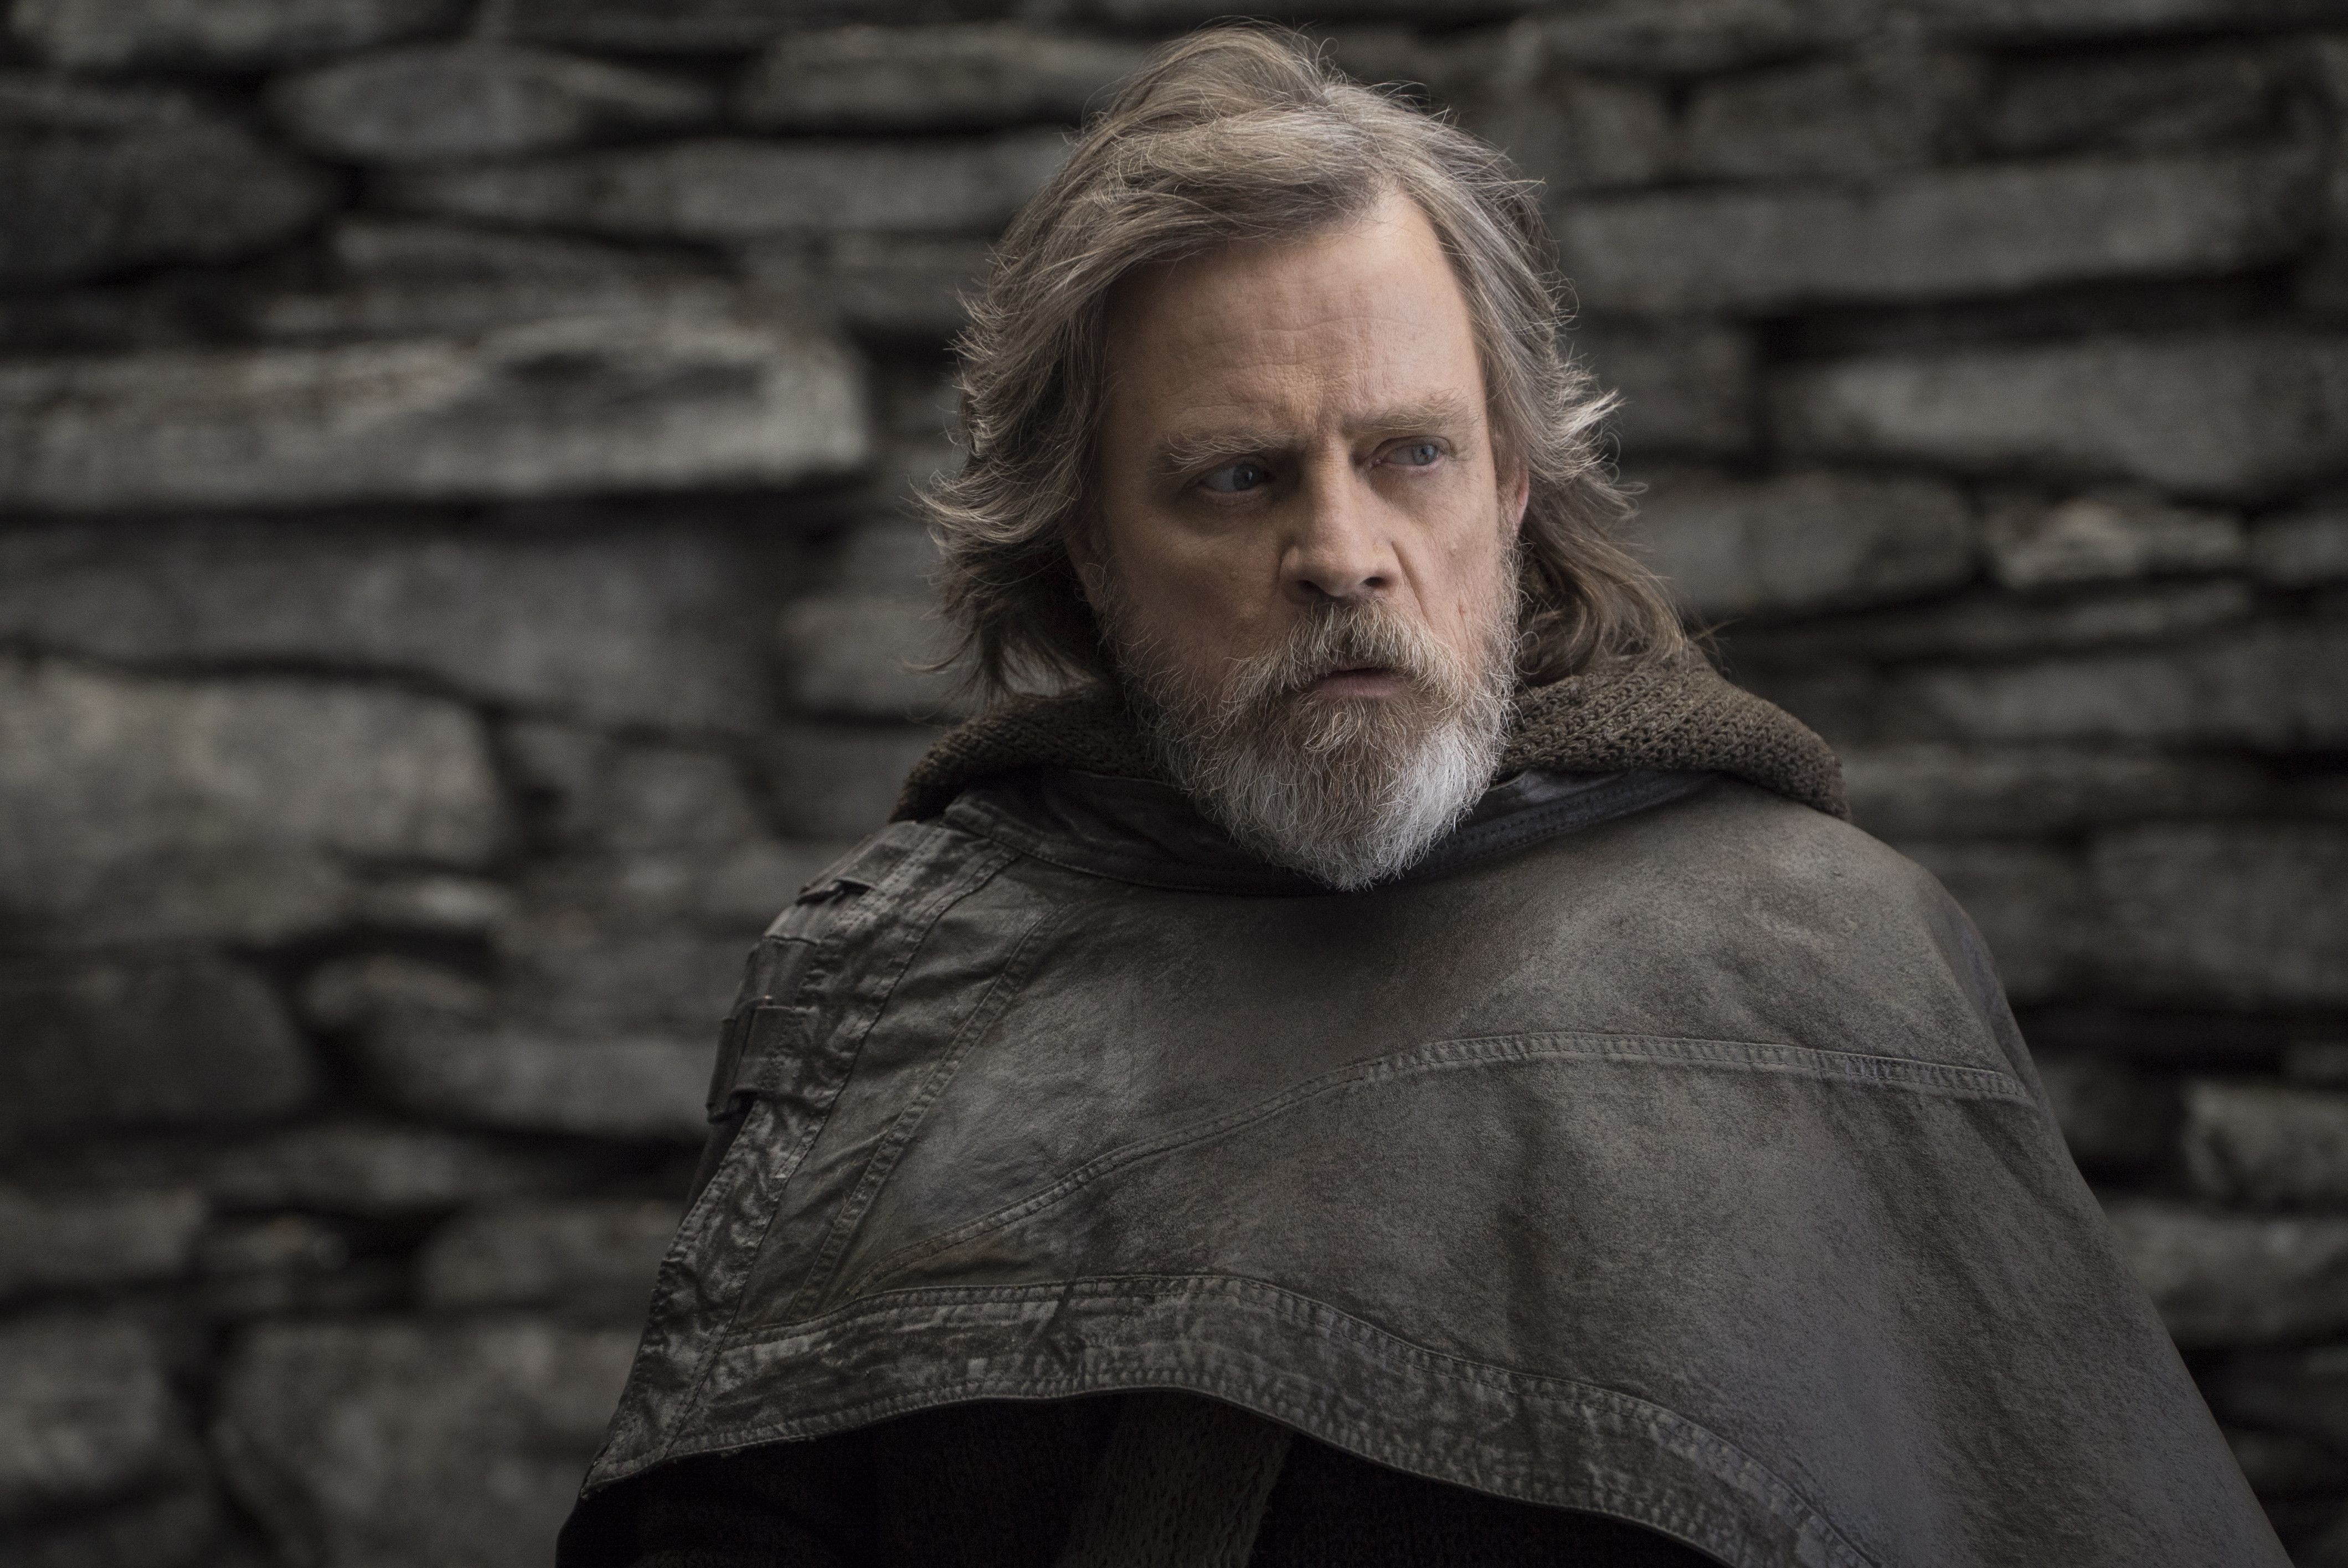 Luke Skywalker's Character in The Last Jedi